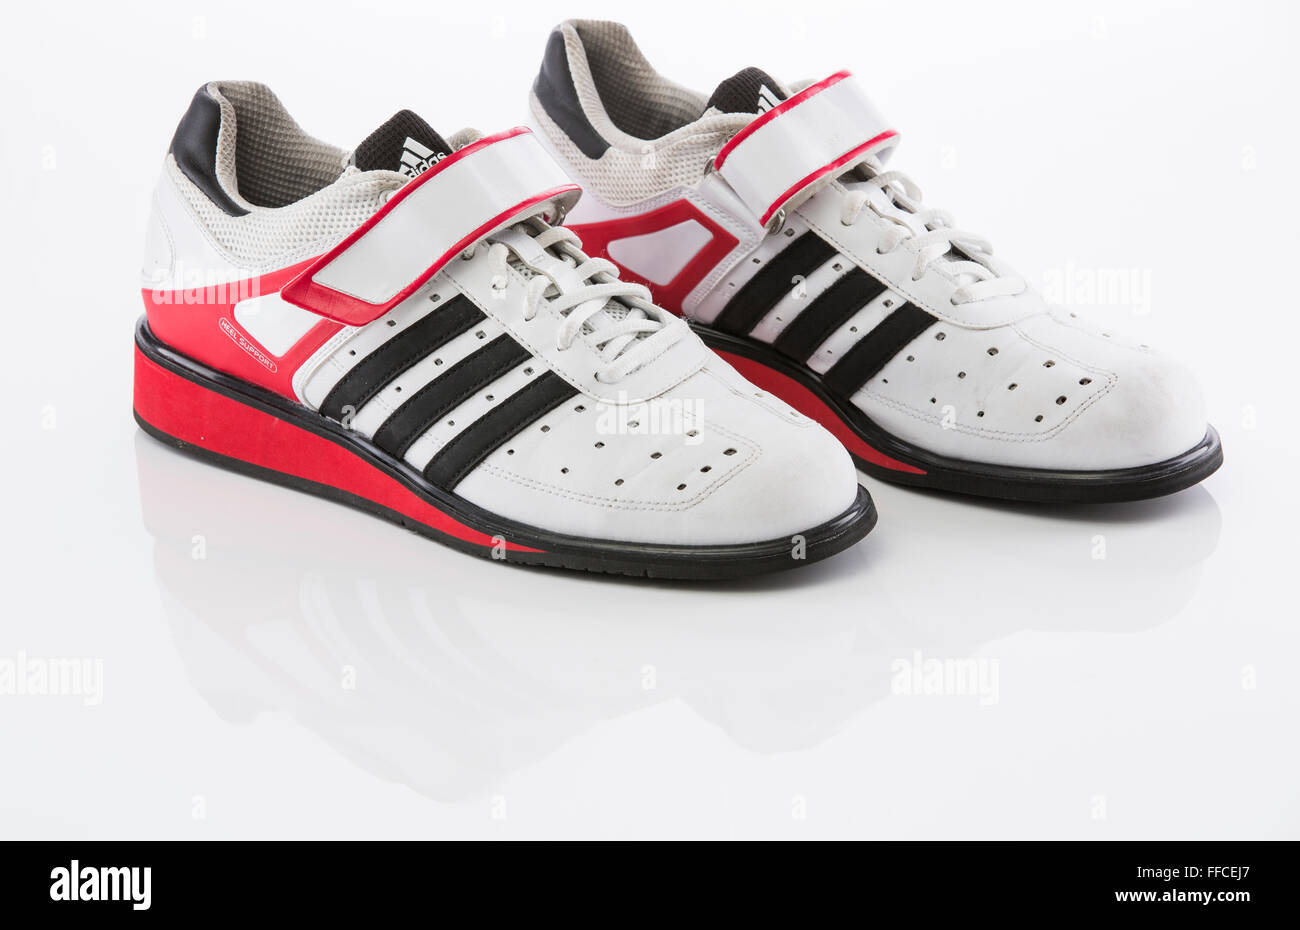 Chaussures haltérophilie Adidas sur un fond blanc avec un reflet. Banque D'Images